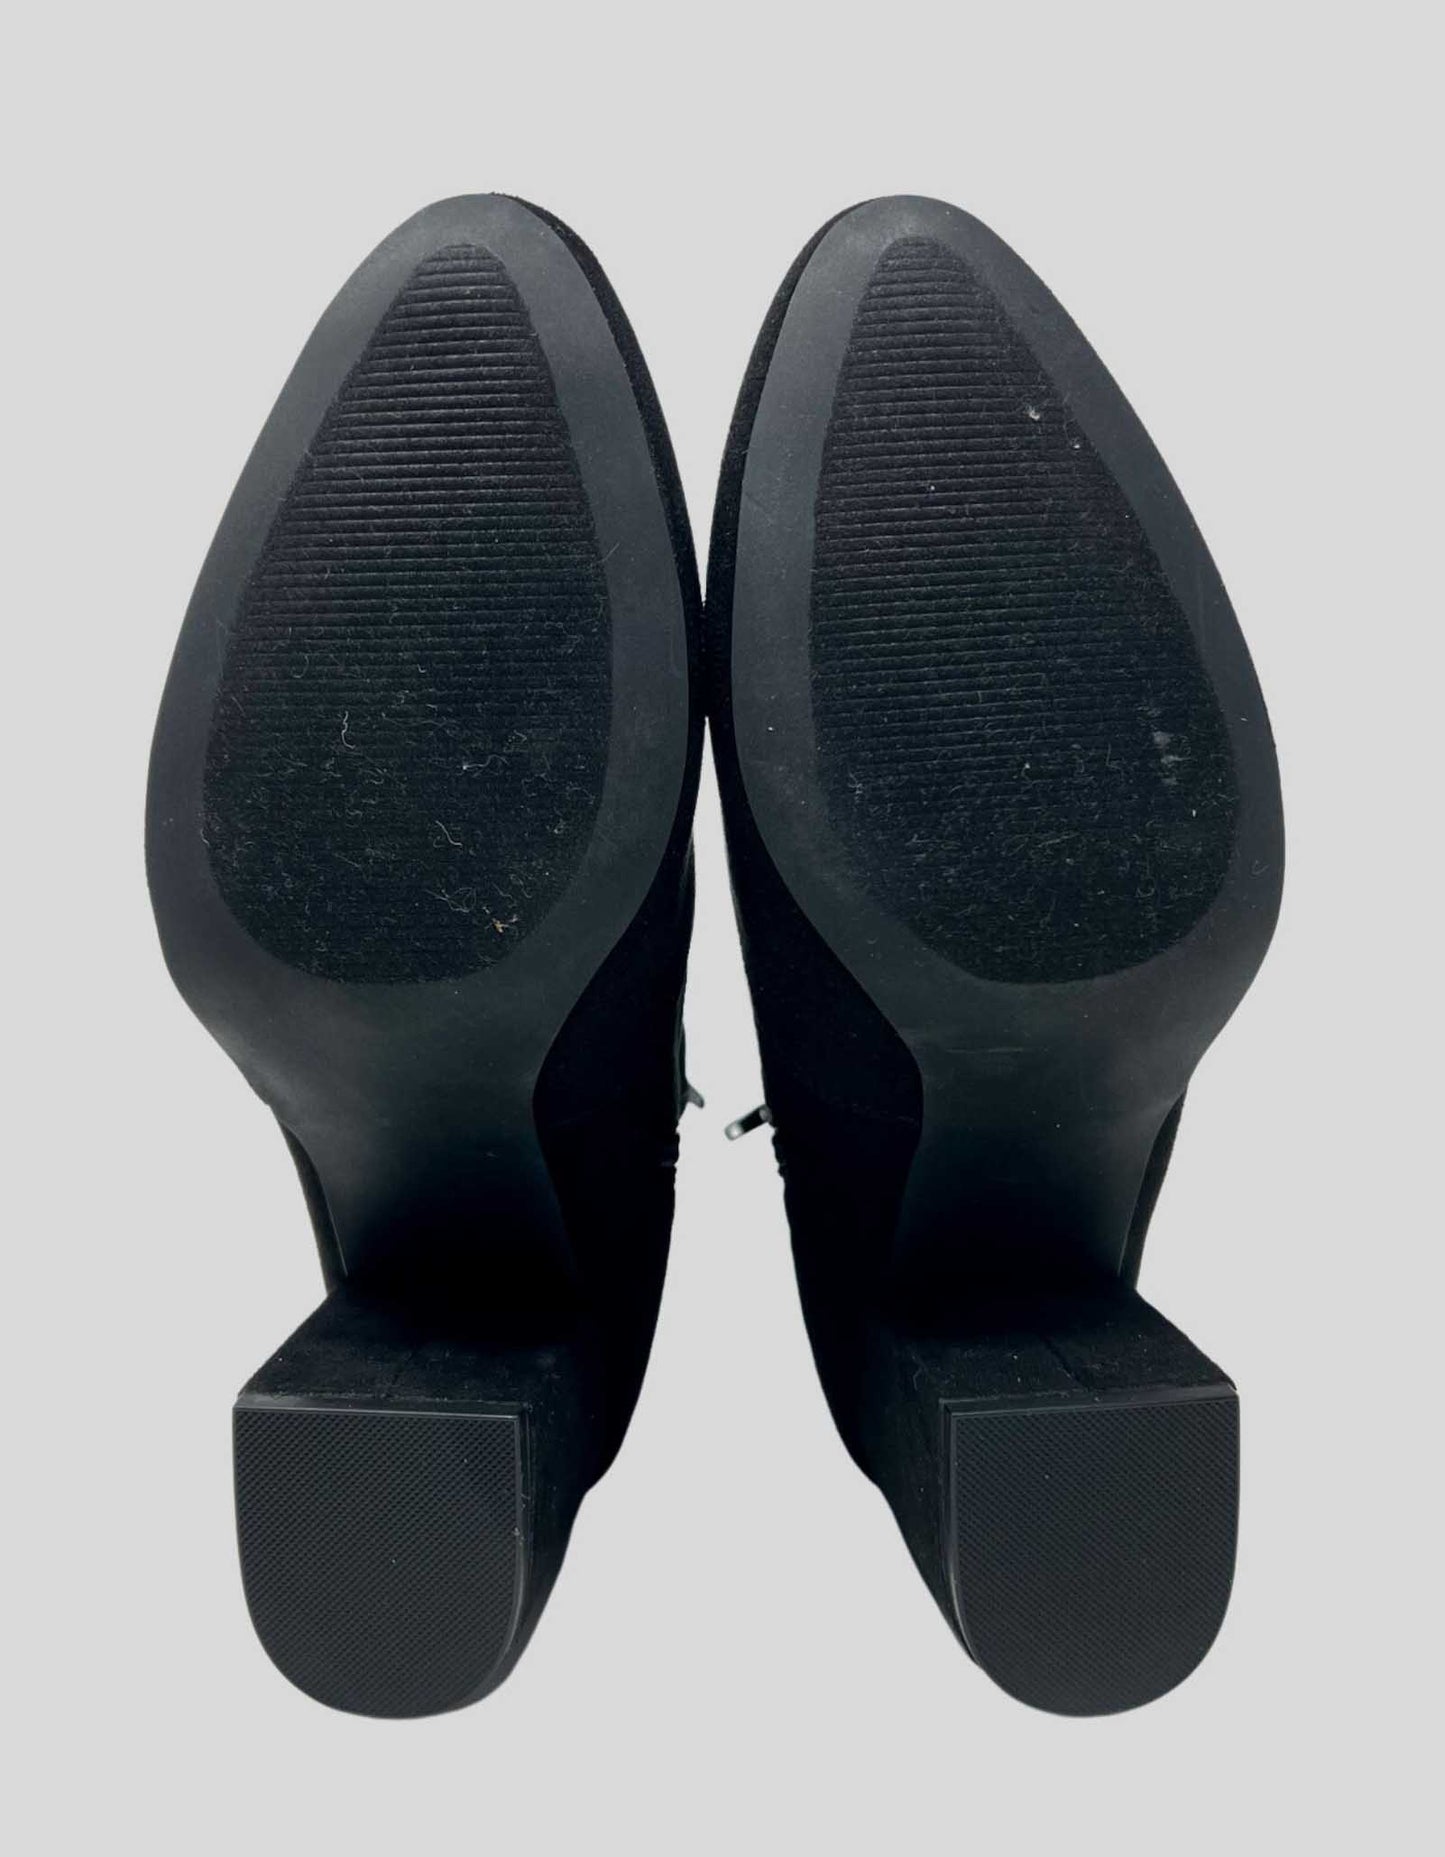 MADDEN GIRL Swift Heels black suede booties - 11 Medium US